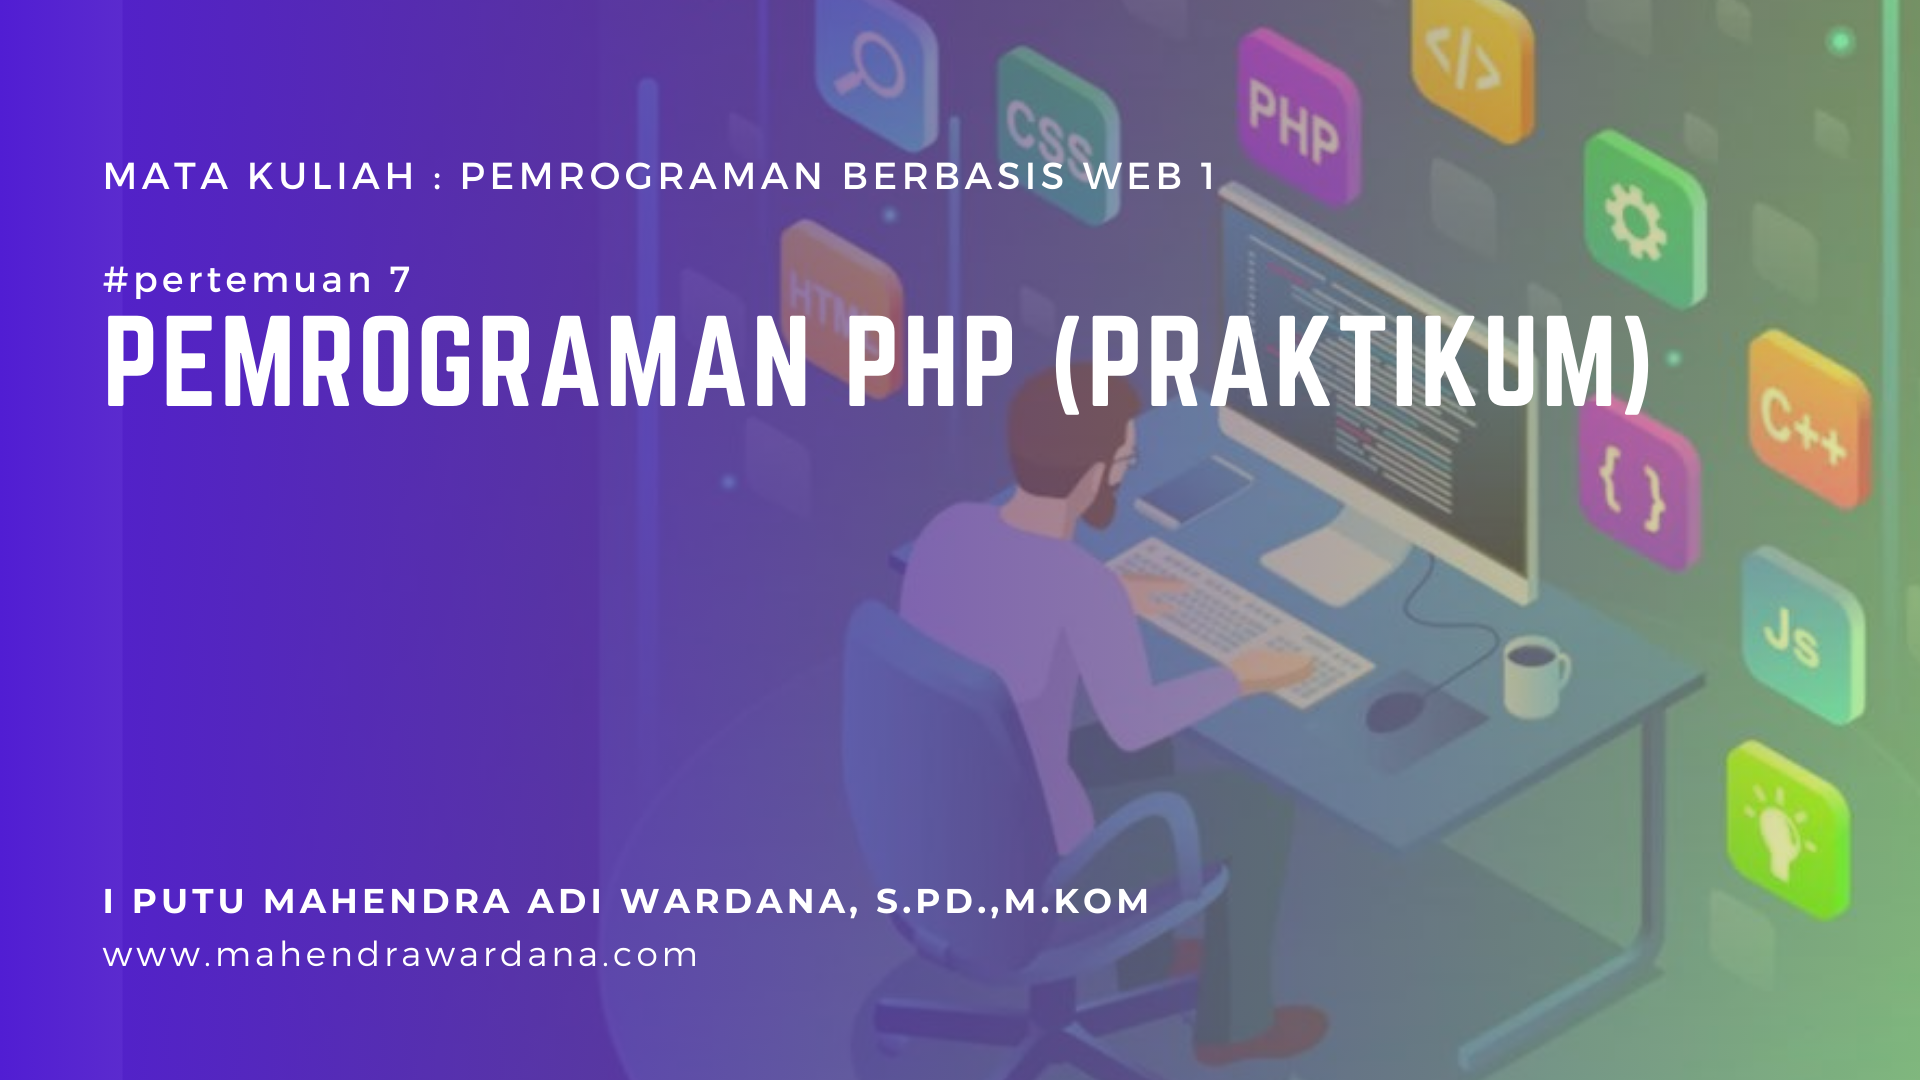 Pertemuan 7 - Pemrograman PHP (Praktikum)